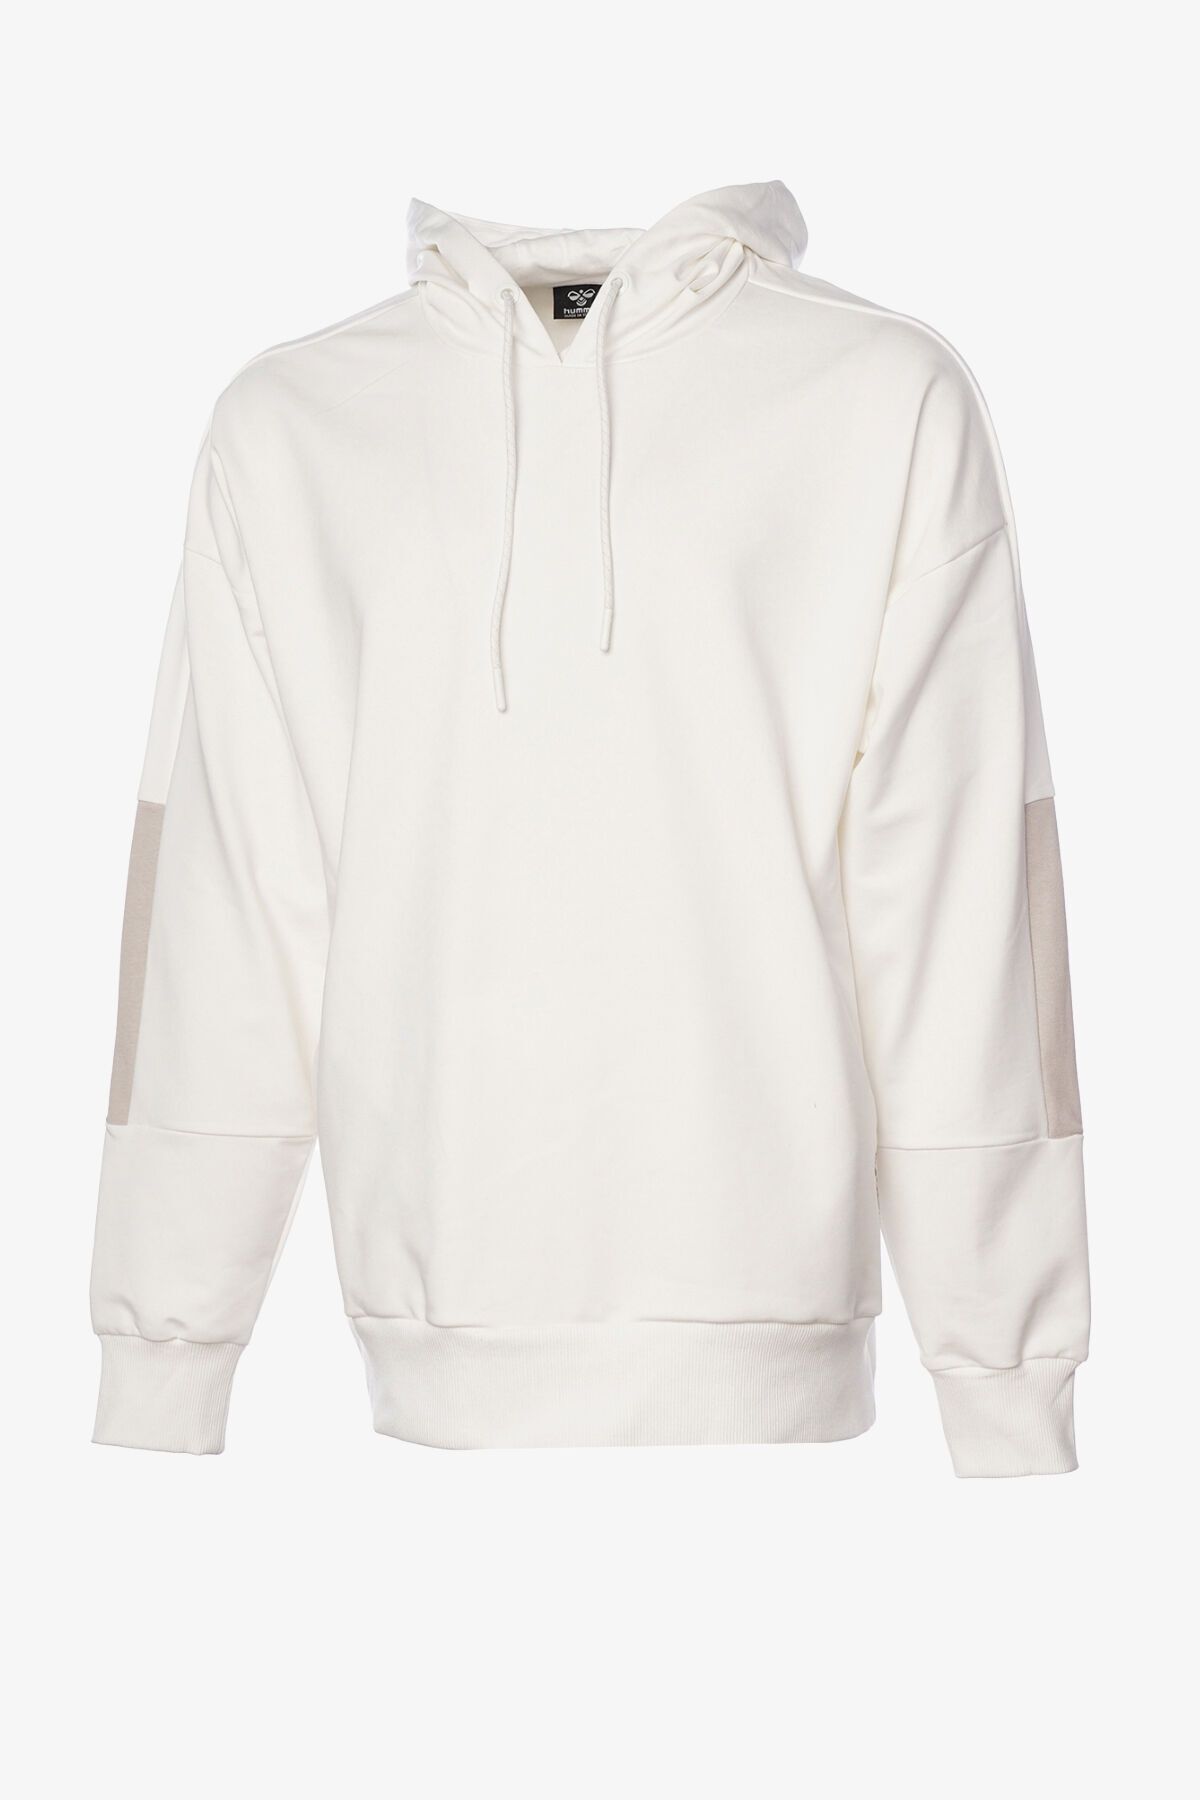 hummel Hmlremy Erkek Beyaz Sweatshirt 921821-9003